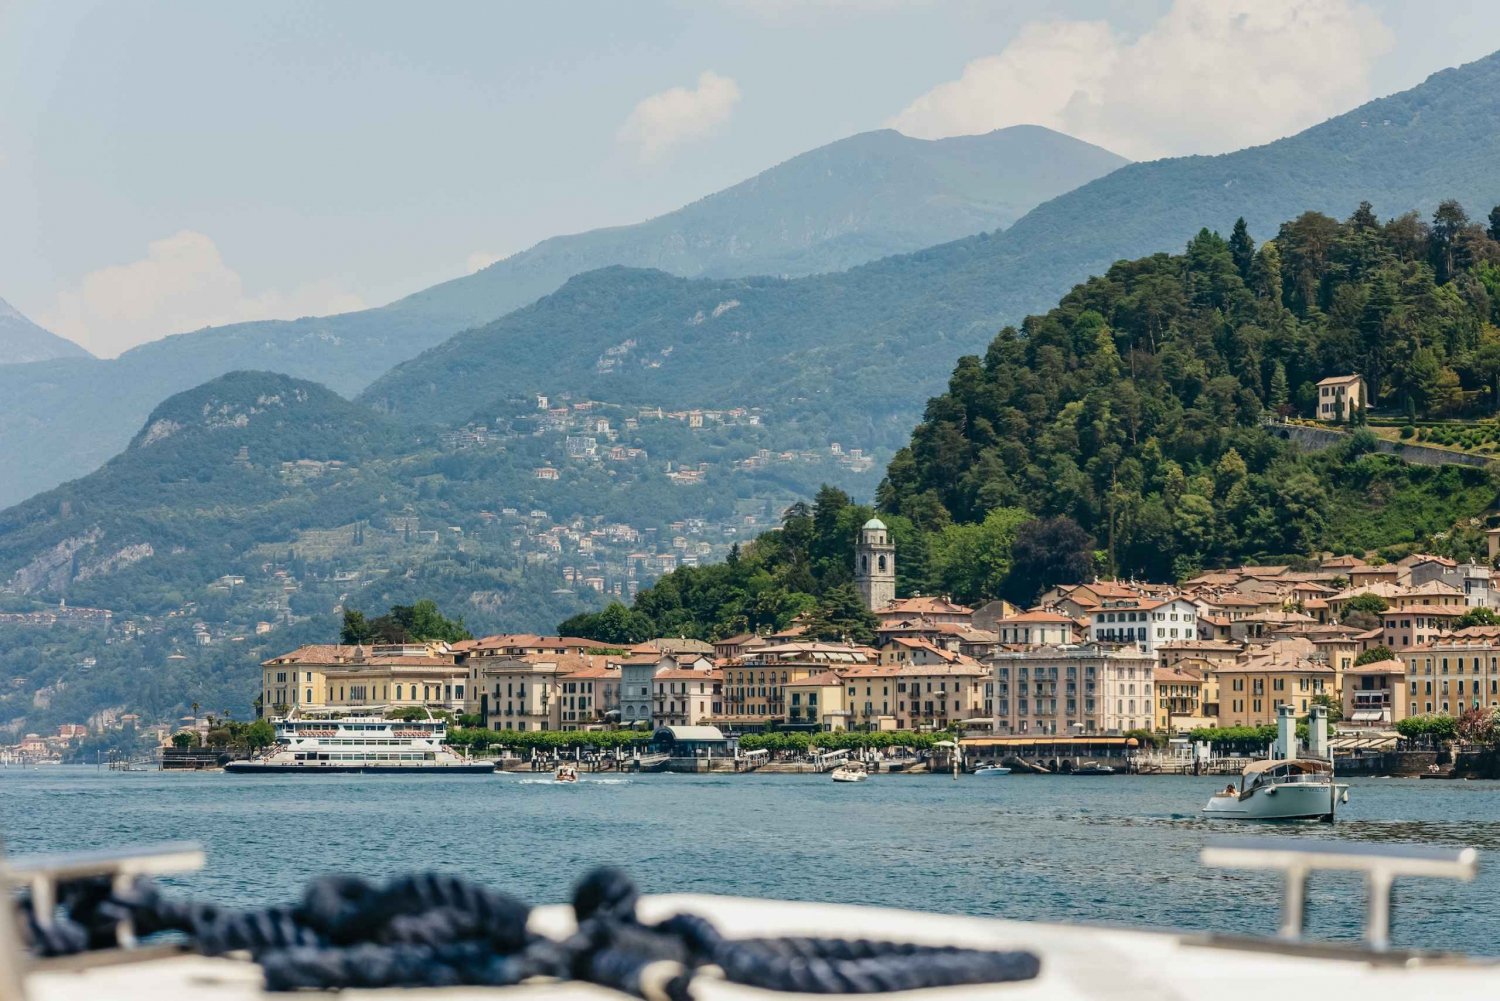 Lake Como & Bellagio by Bus & Private Boat Tour